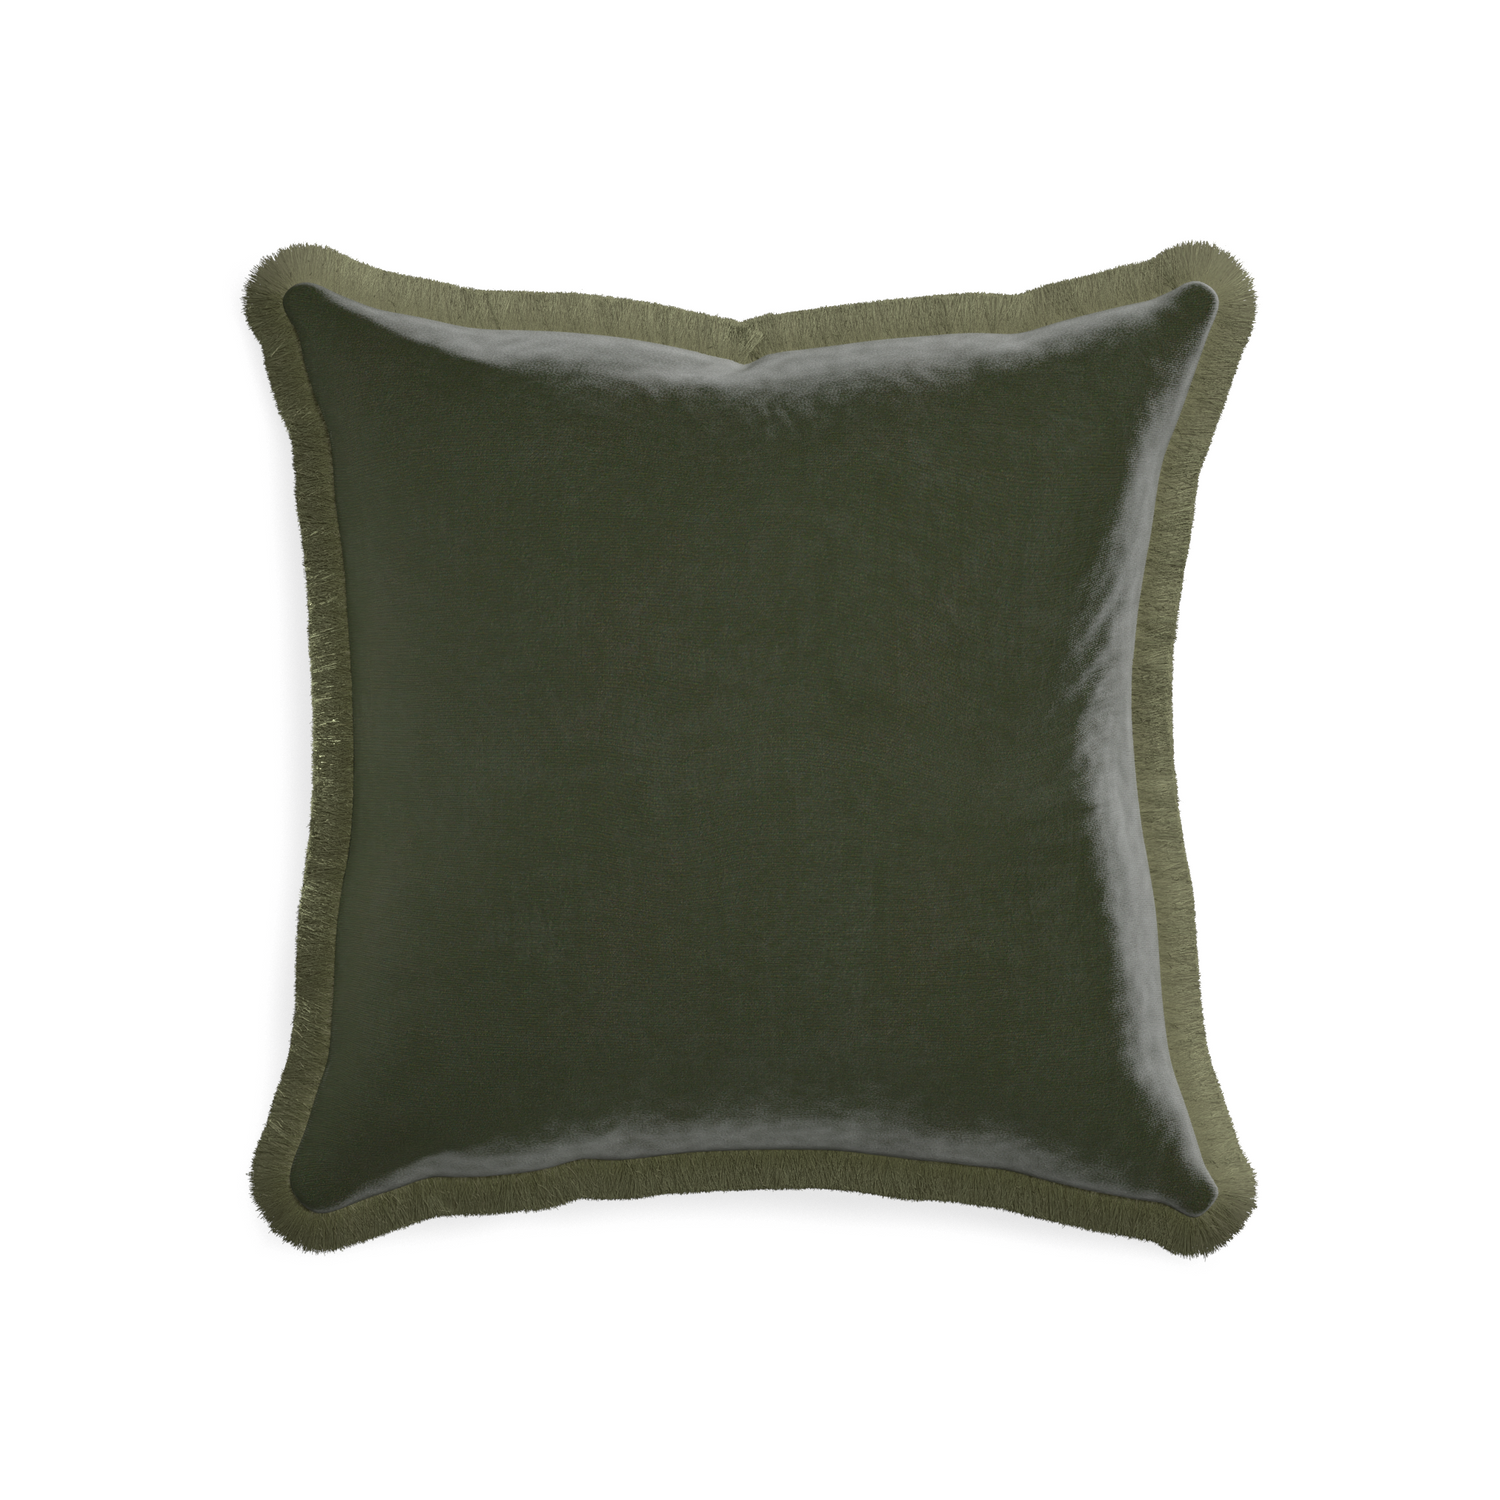 20-square fern velvet custom pillow with sage fringe on white background